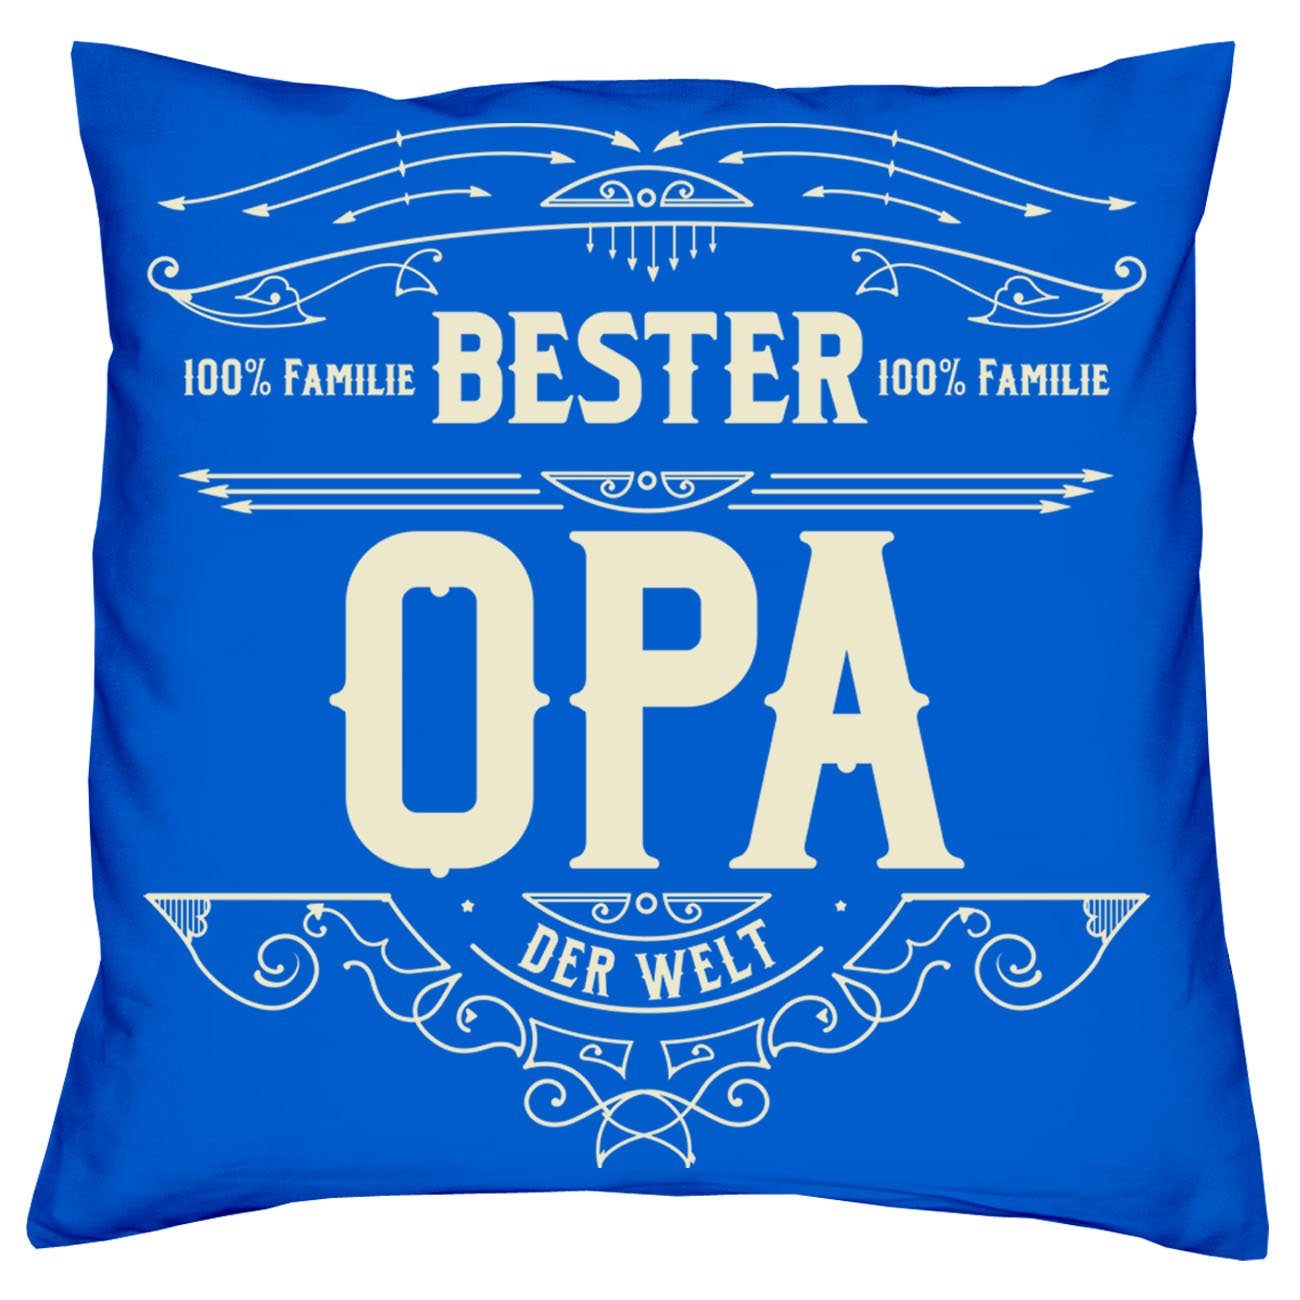 Großeltern royal-blau Dekokissen mit Bester Kissen-Set Opa für Weihnachtsgeschenk Beste Oma Urkunden, Soreso®